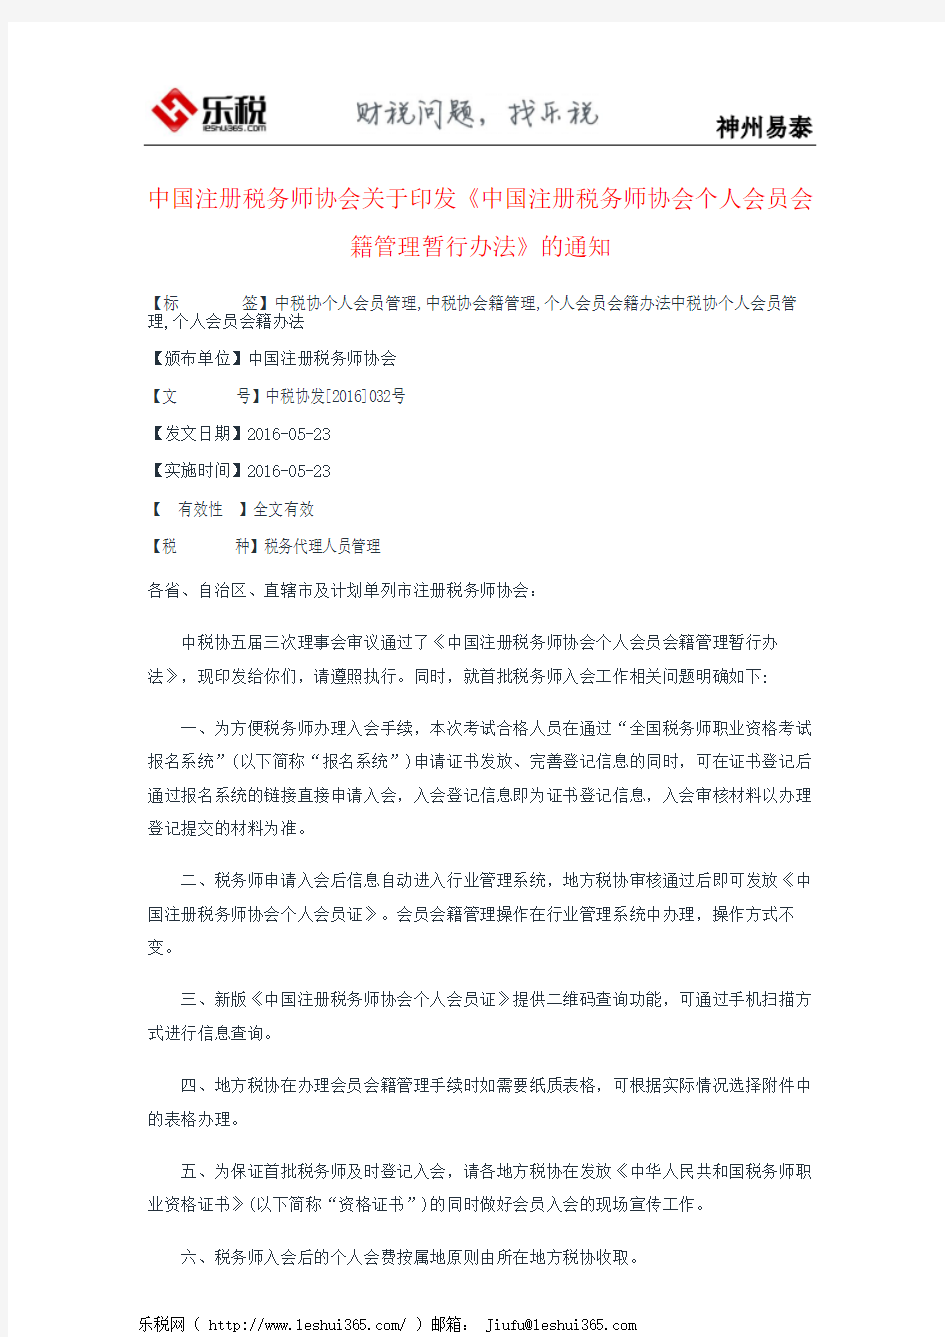 中国注册税务师协会关于印发《中国注册税务师协会个人会员会籍管